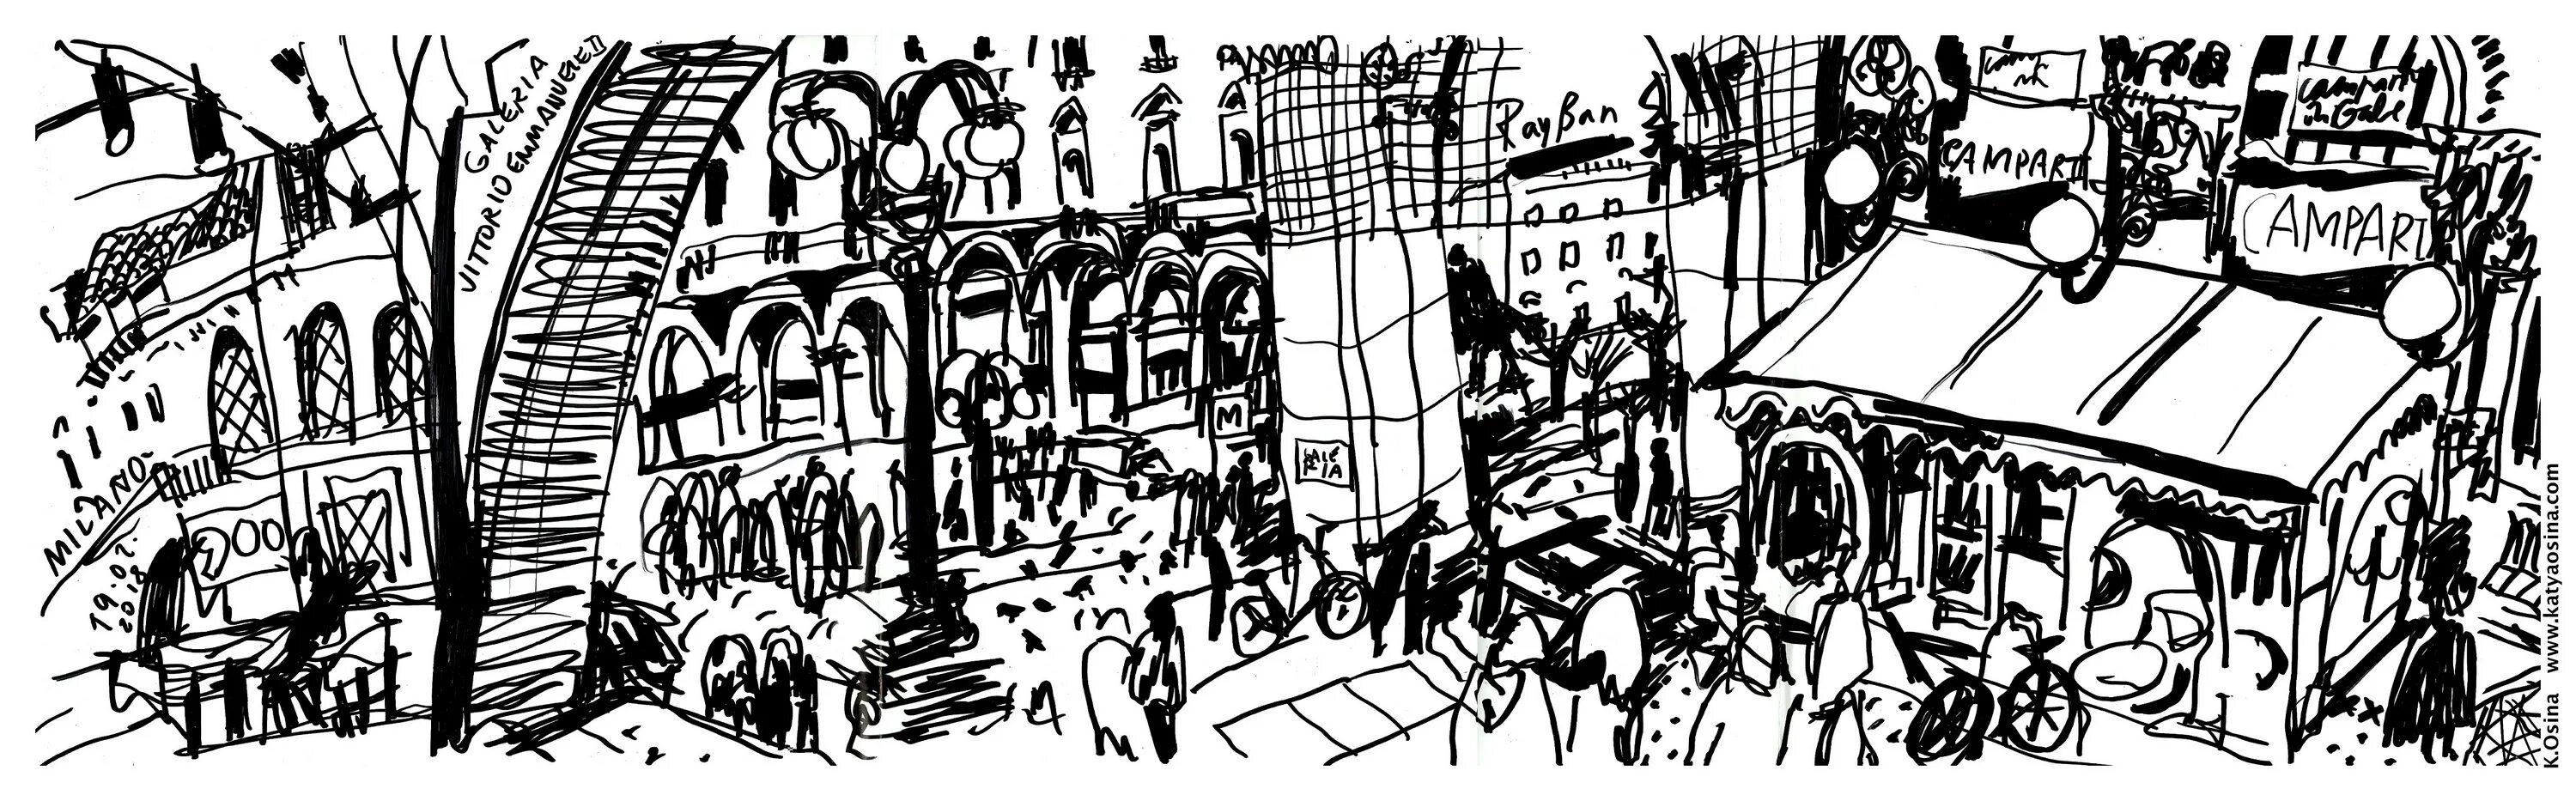 Средневековый город ярмарка арт. Фон из иллюстраций. Улица Рима рисунок. Рисунок годы странствия. Рисунок путешествие во времени